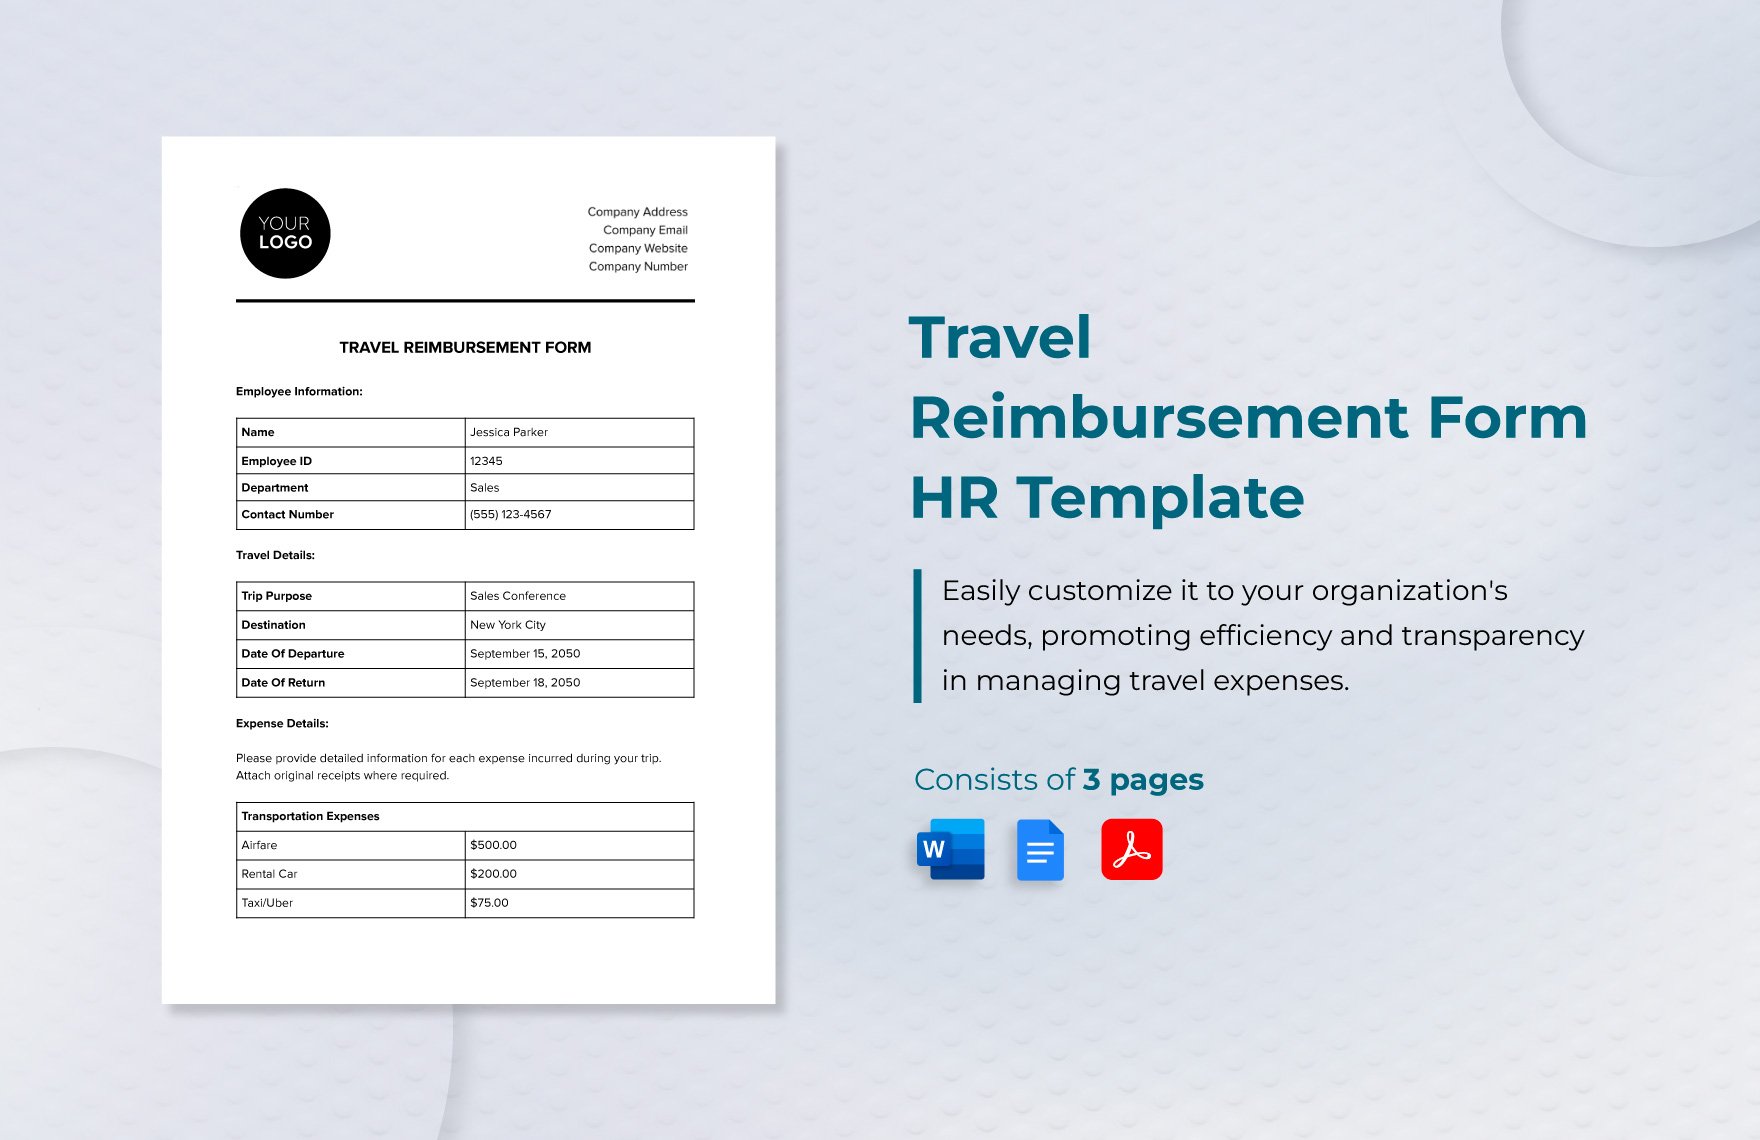 Travel Reimbursement Form HR Template